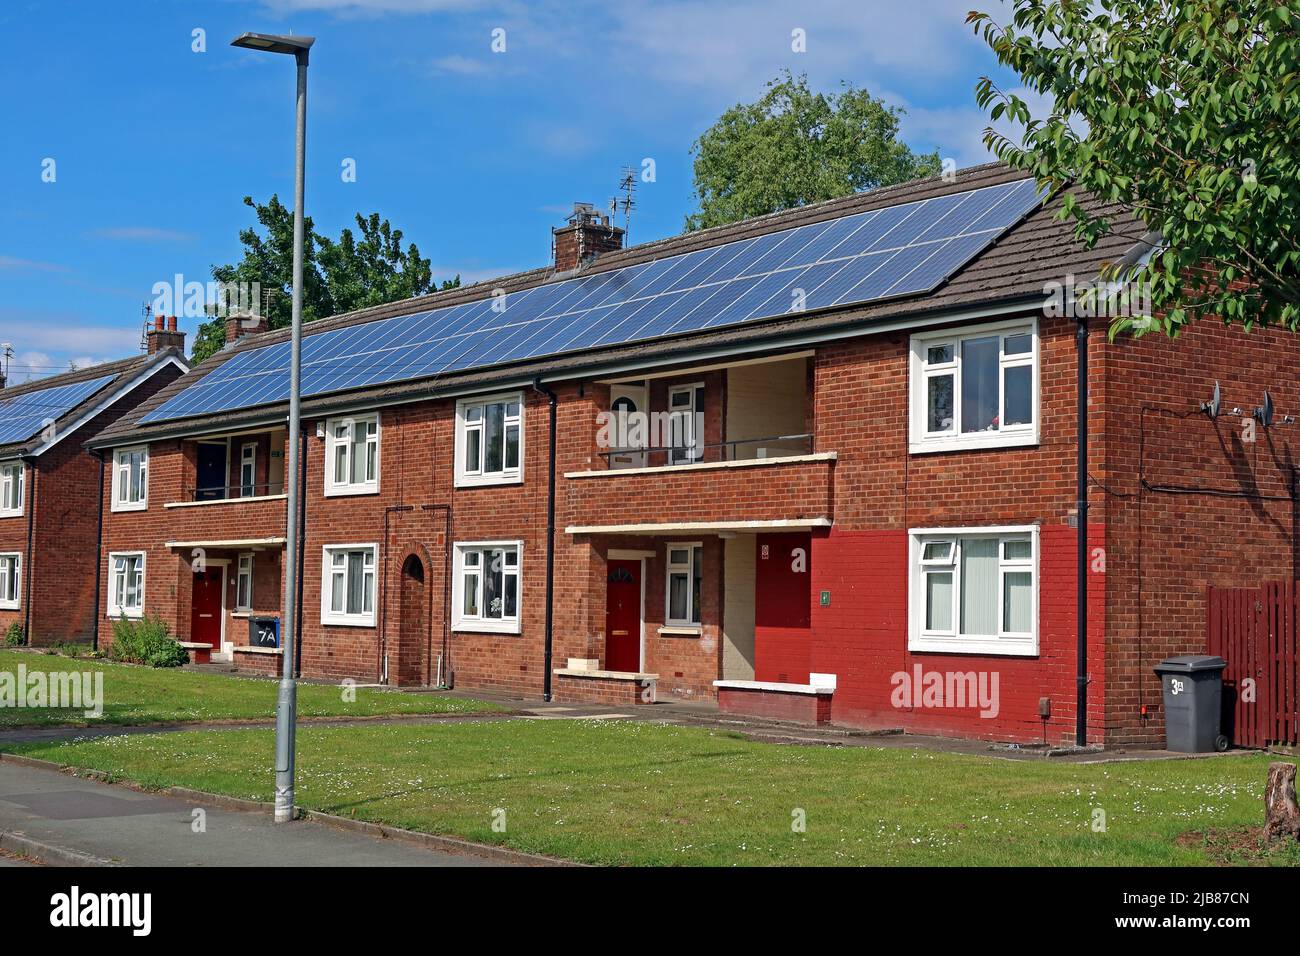 Chiltern Place Warringon Solar PV, Off Winwick Road, Cheshire, WA1, Inghilterra, REGNO UNITO Foto Stock